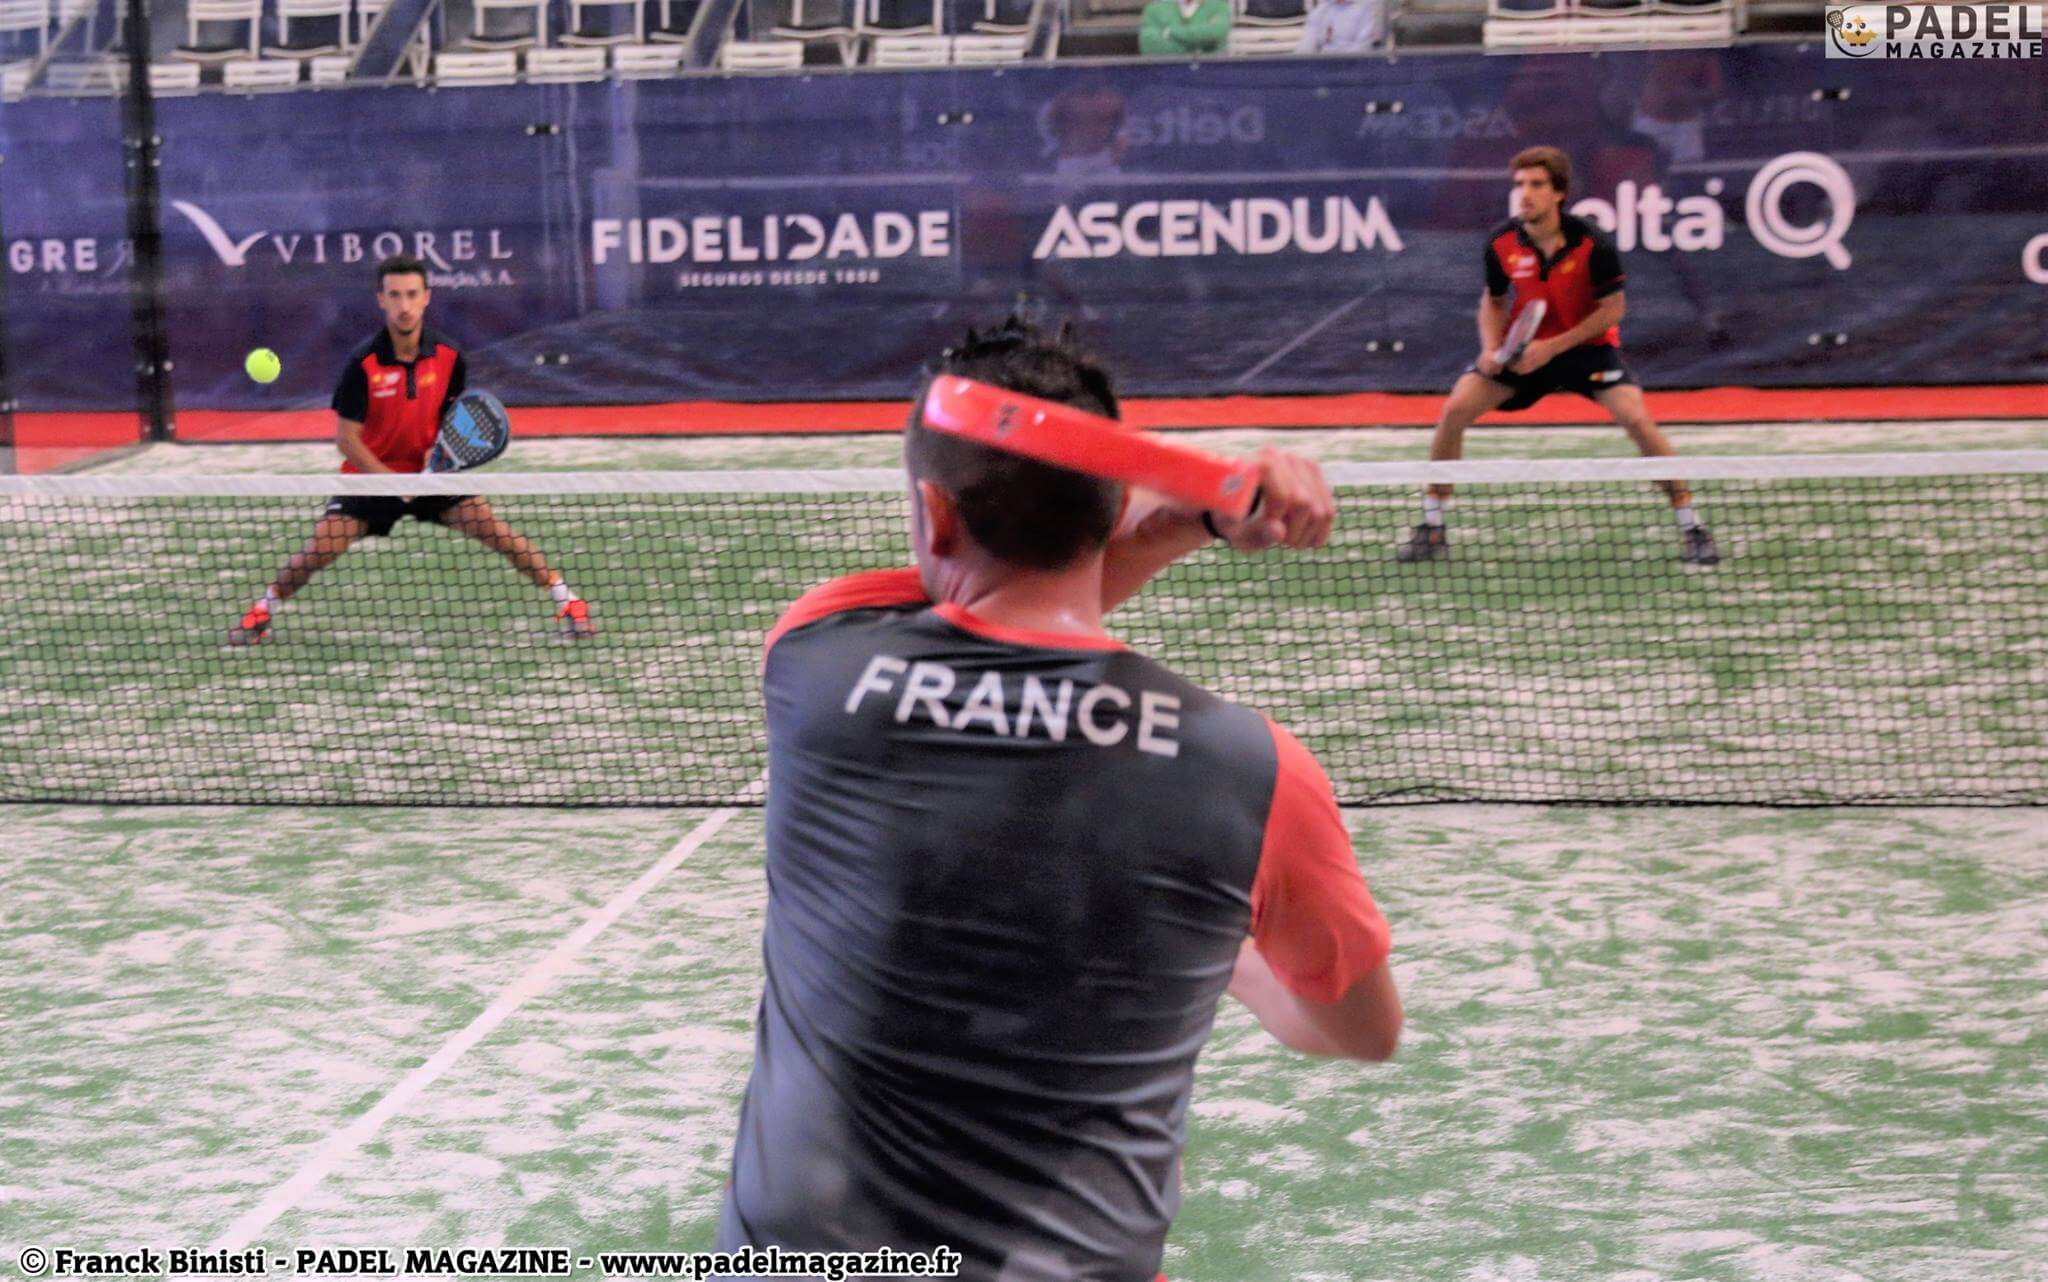 La Francia apre la palla ai mondiali padel dal team 2016